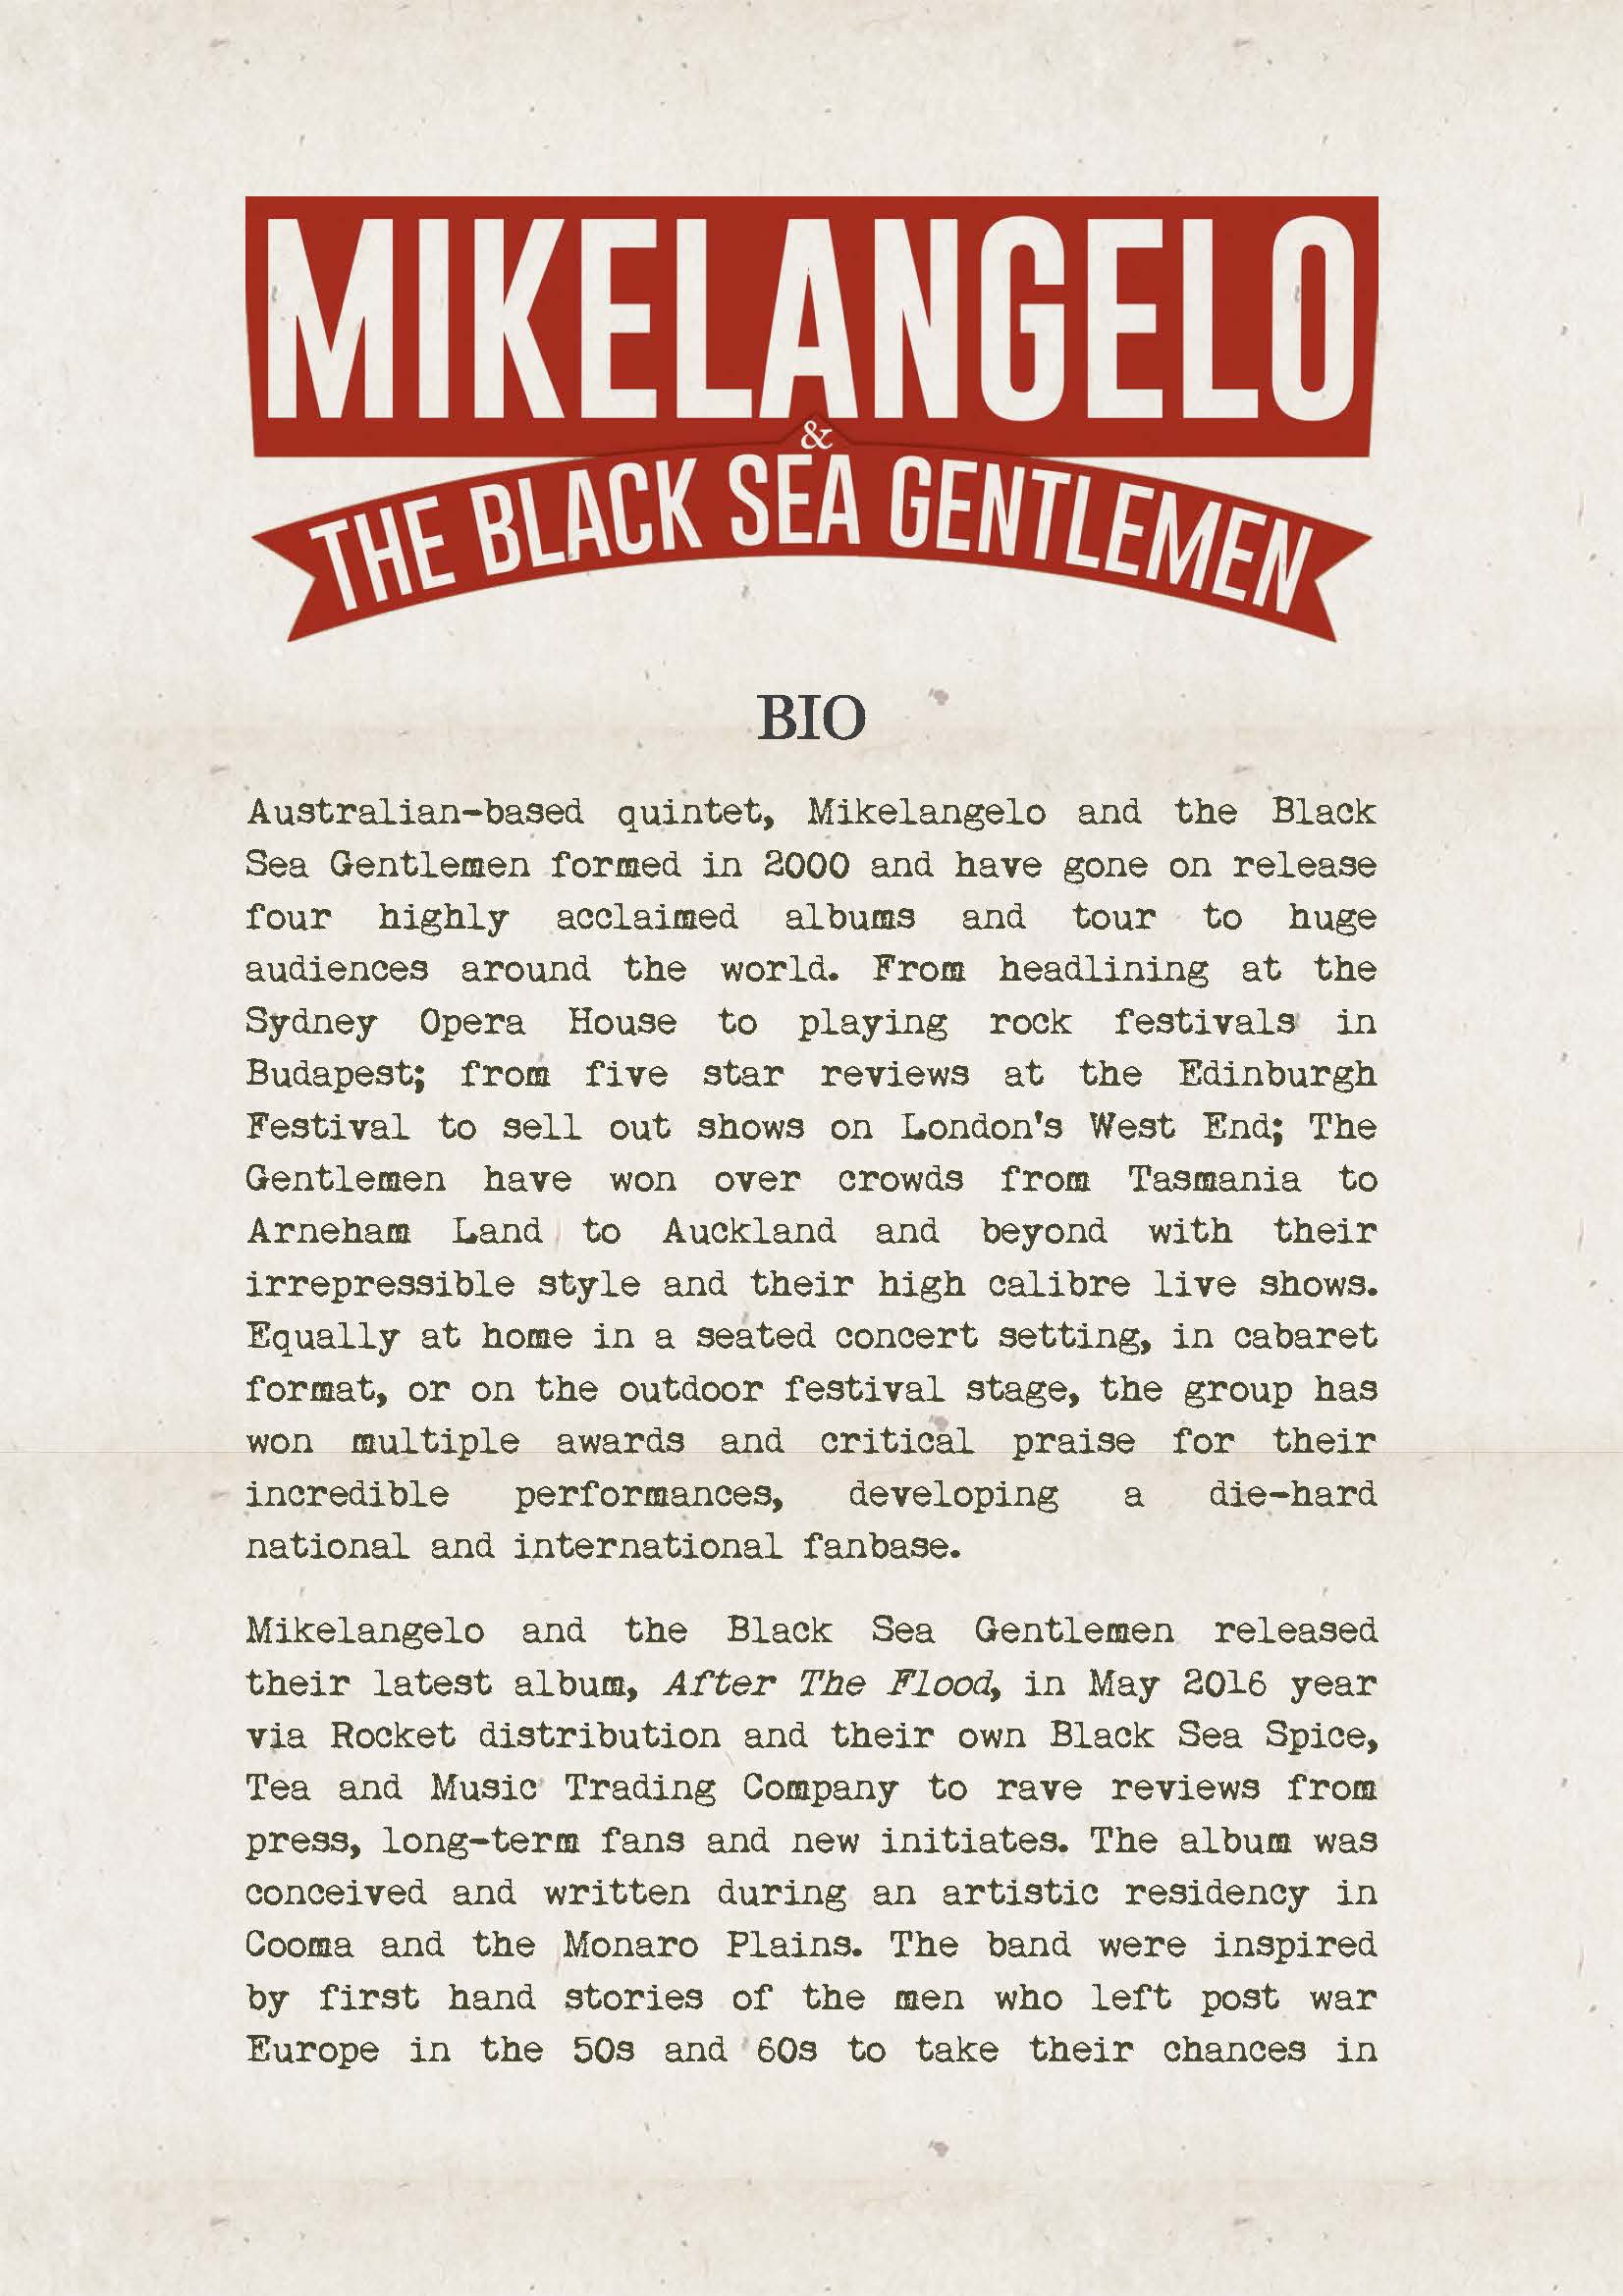 Mikelangelo & the Black sea gentlemen bio